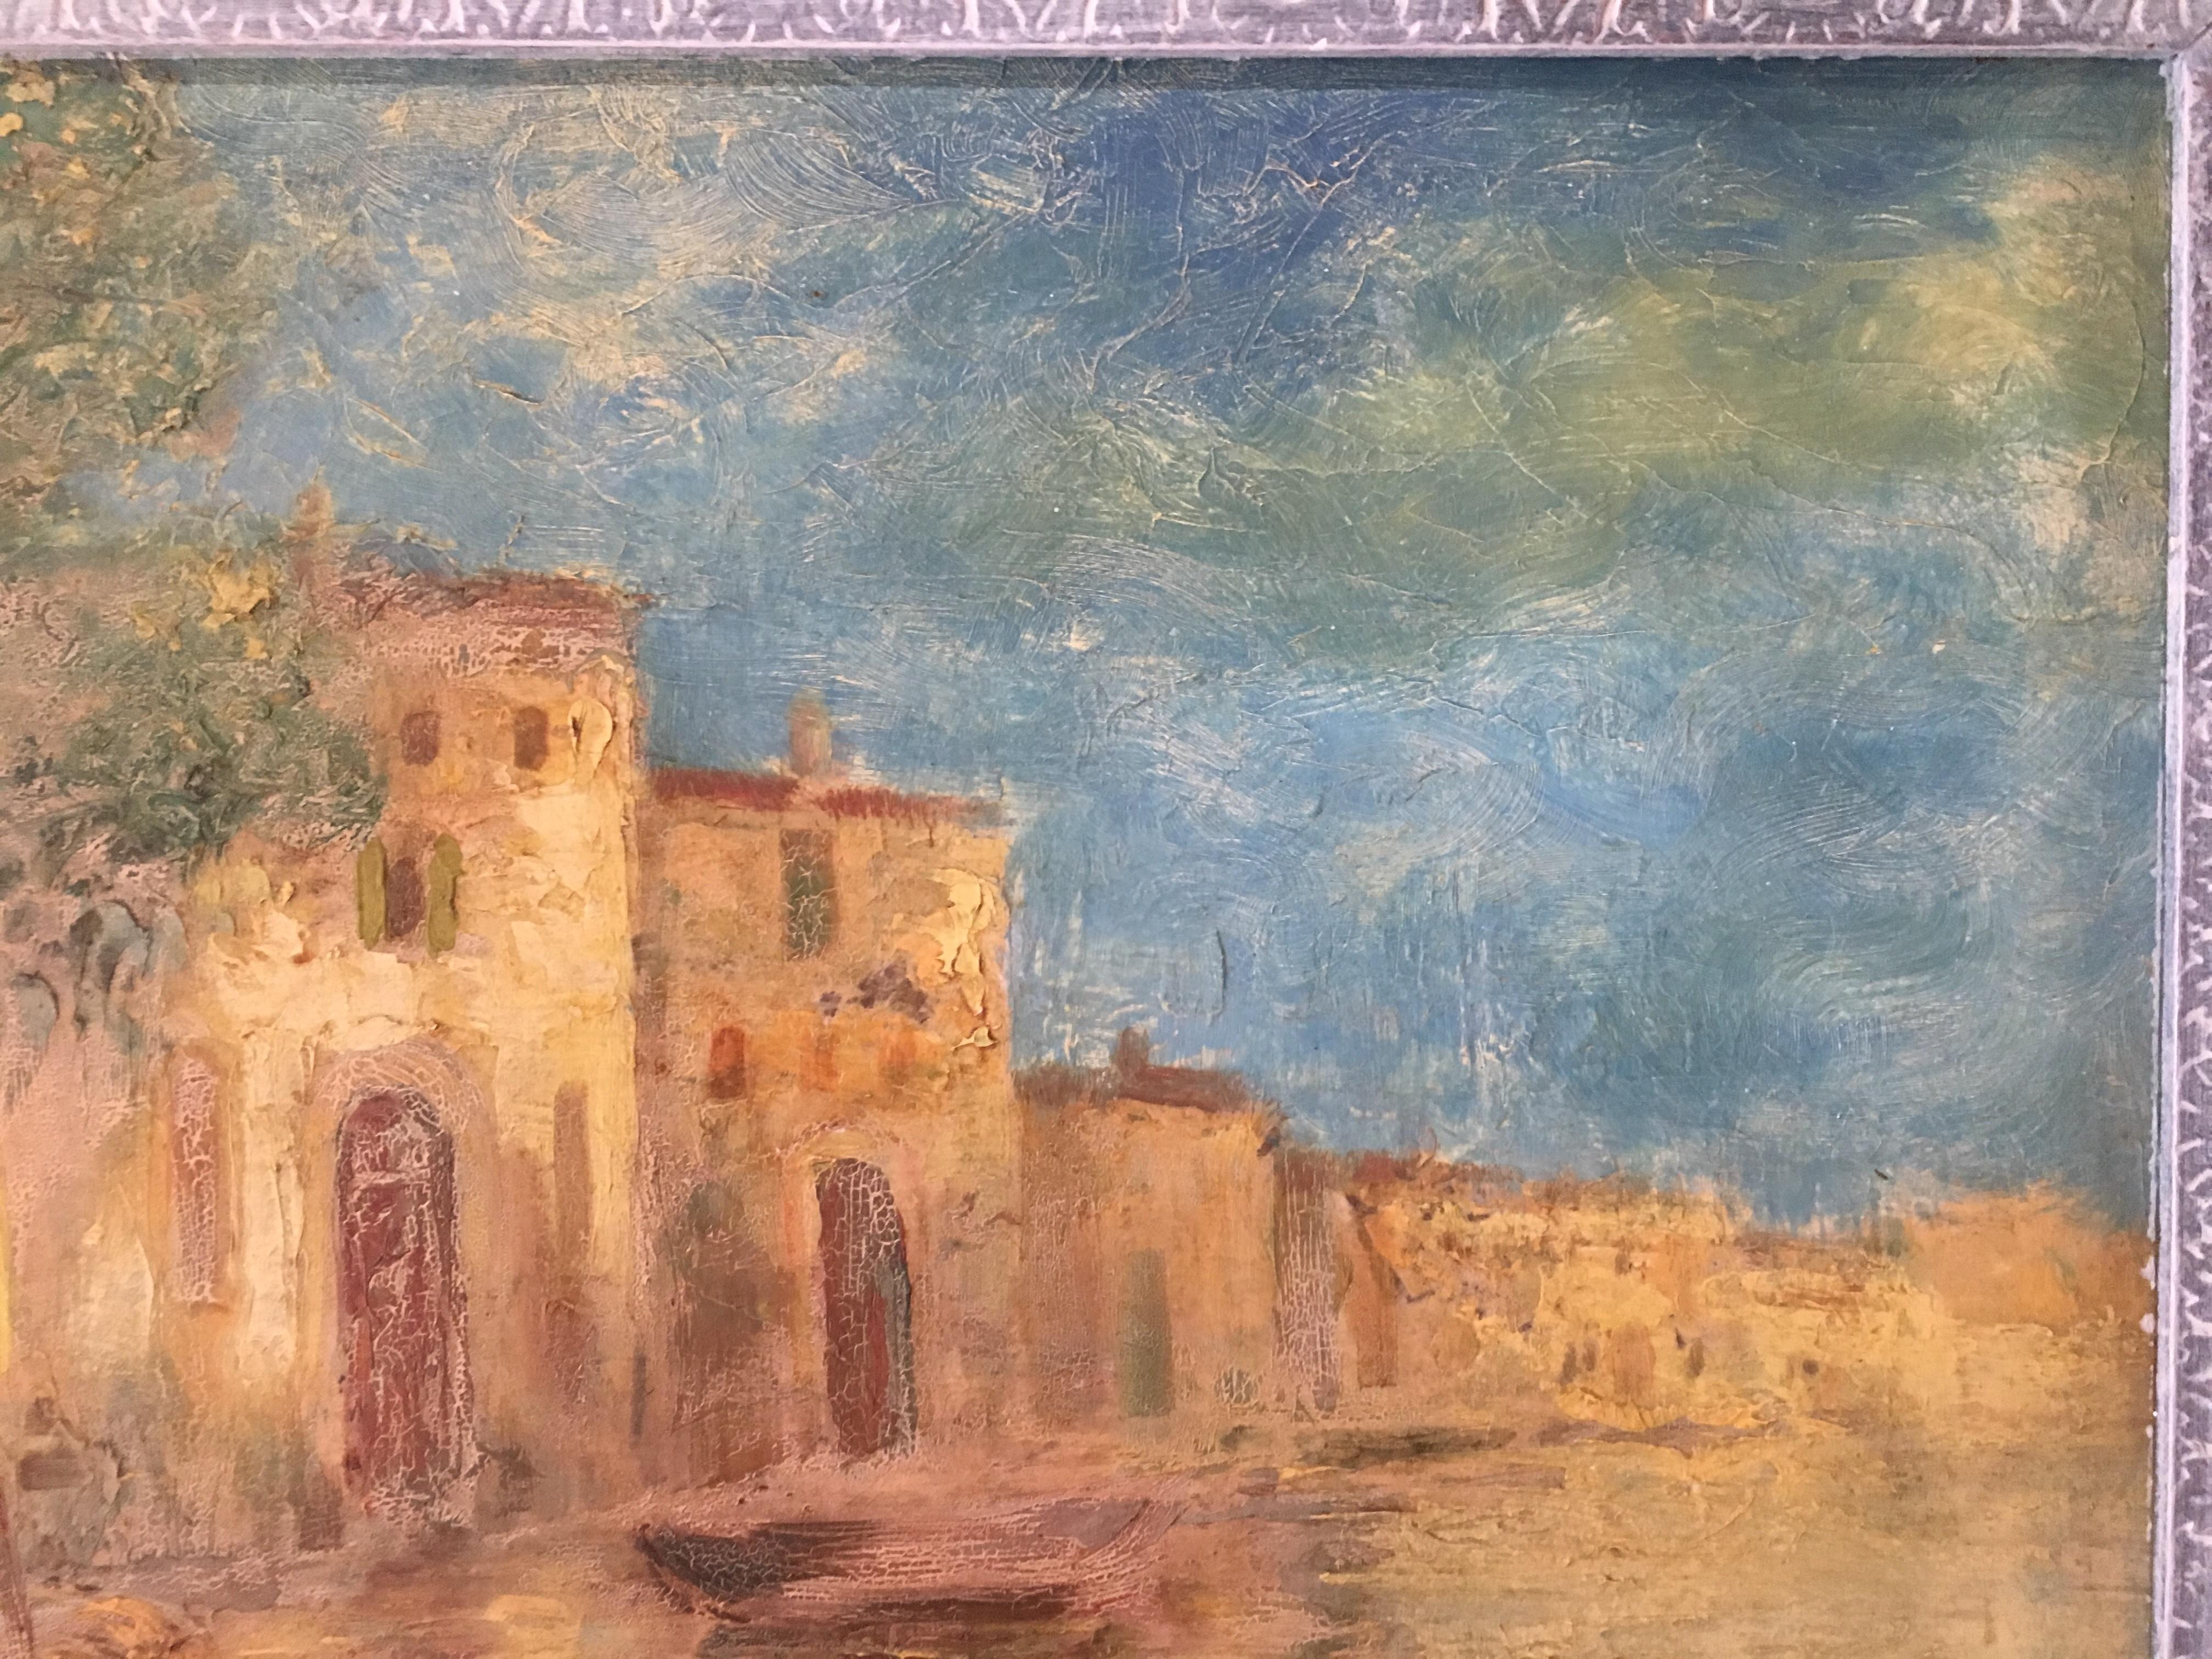 Peinture impressionniste originale sur carton représentant les voies navigables de ce qui pourrait être Port Grimaud, près de Saint-Tropez, en France. 
Signé, mais le nom de l'artiste est illisible et inconnu. 

Présenté dans un cadre en bois peint